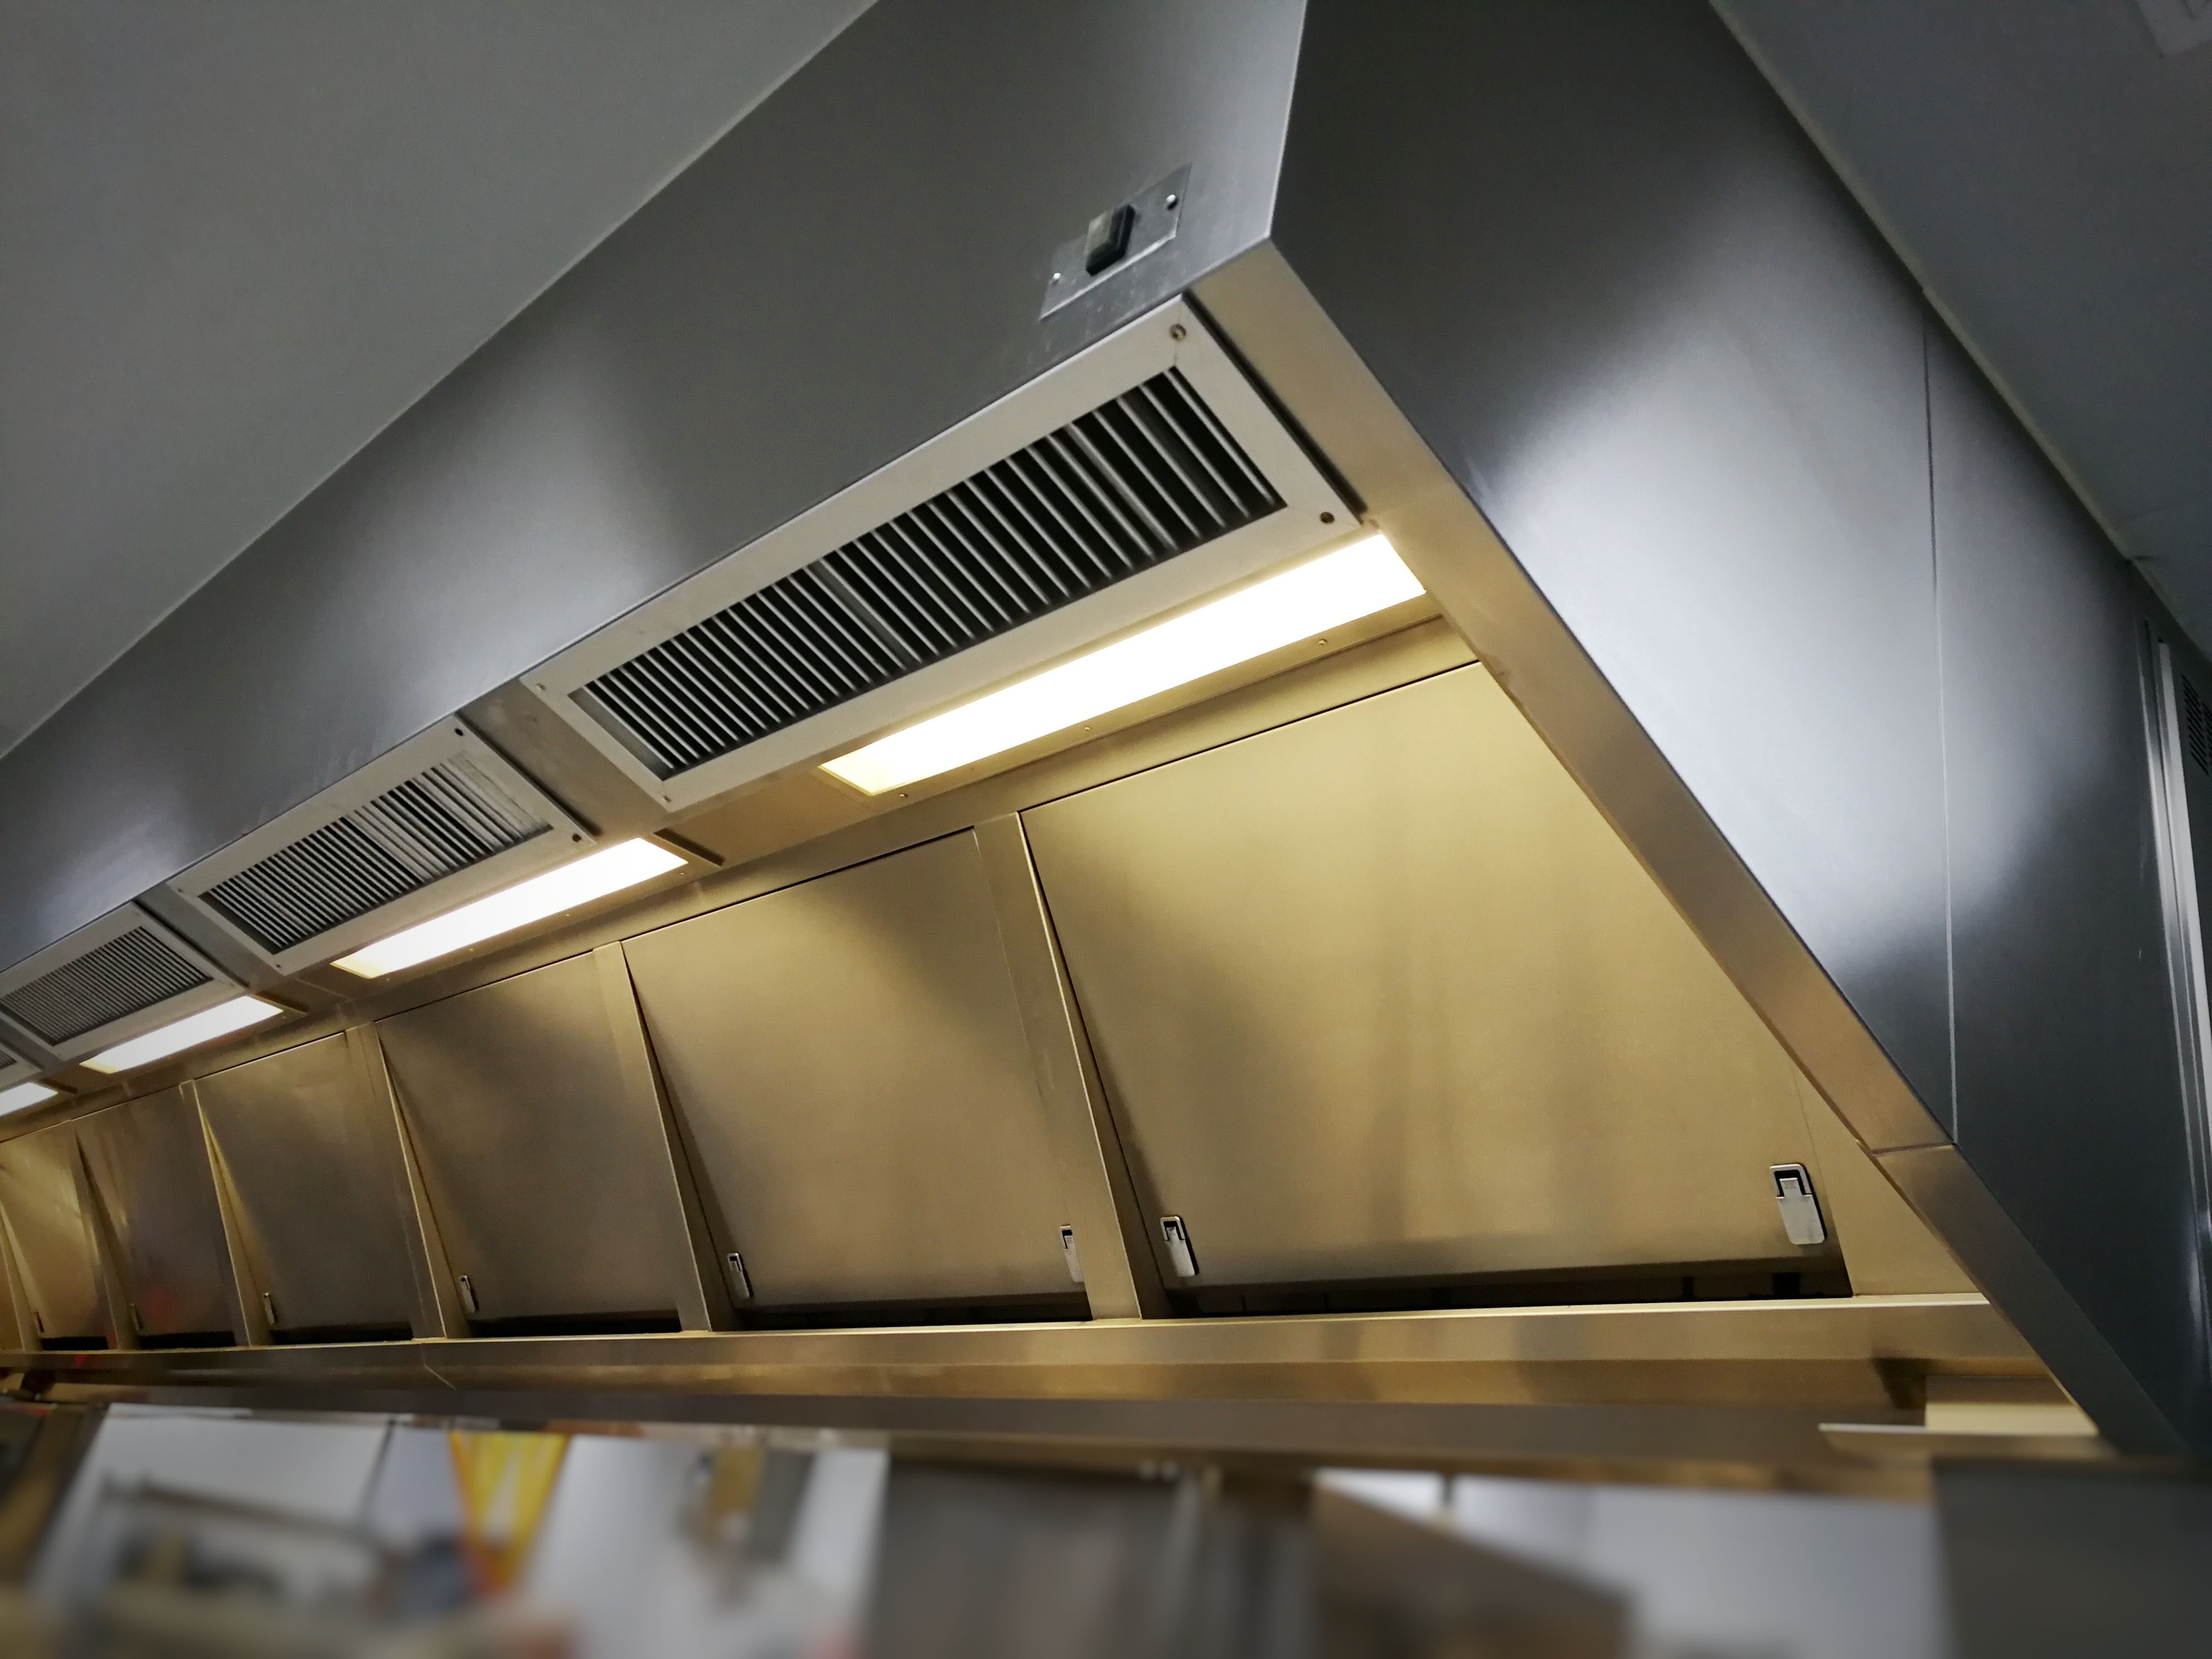 Kitchen ventilation hoods